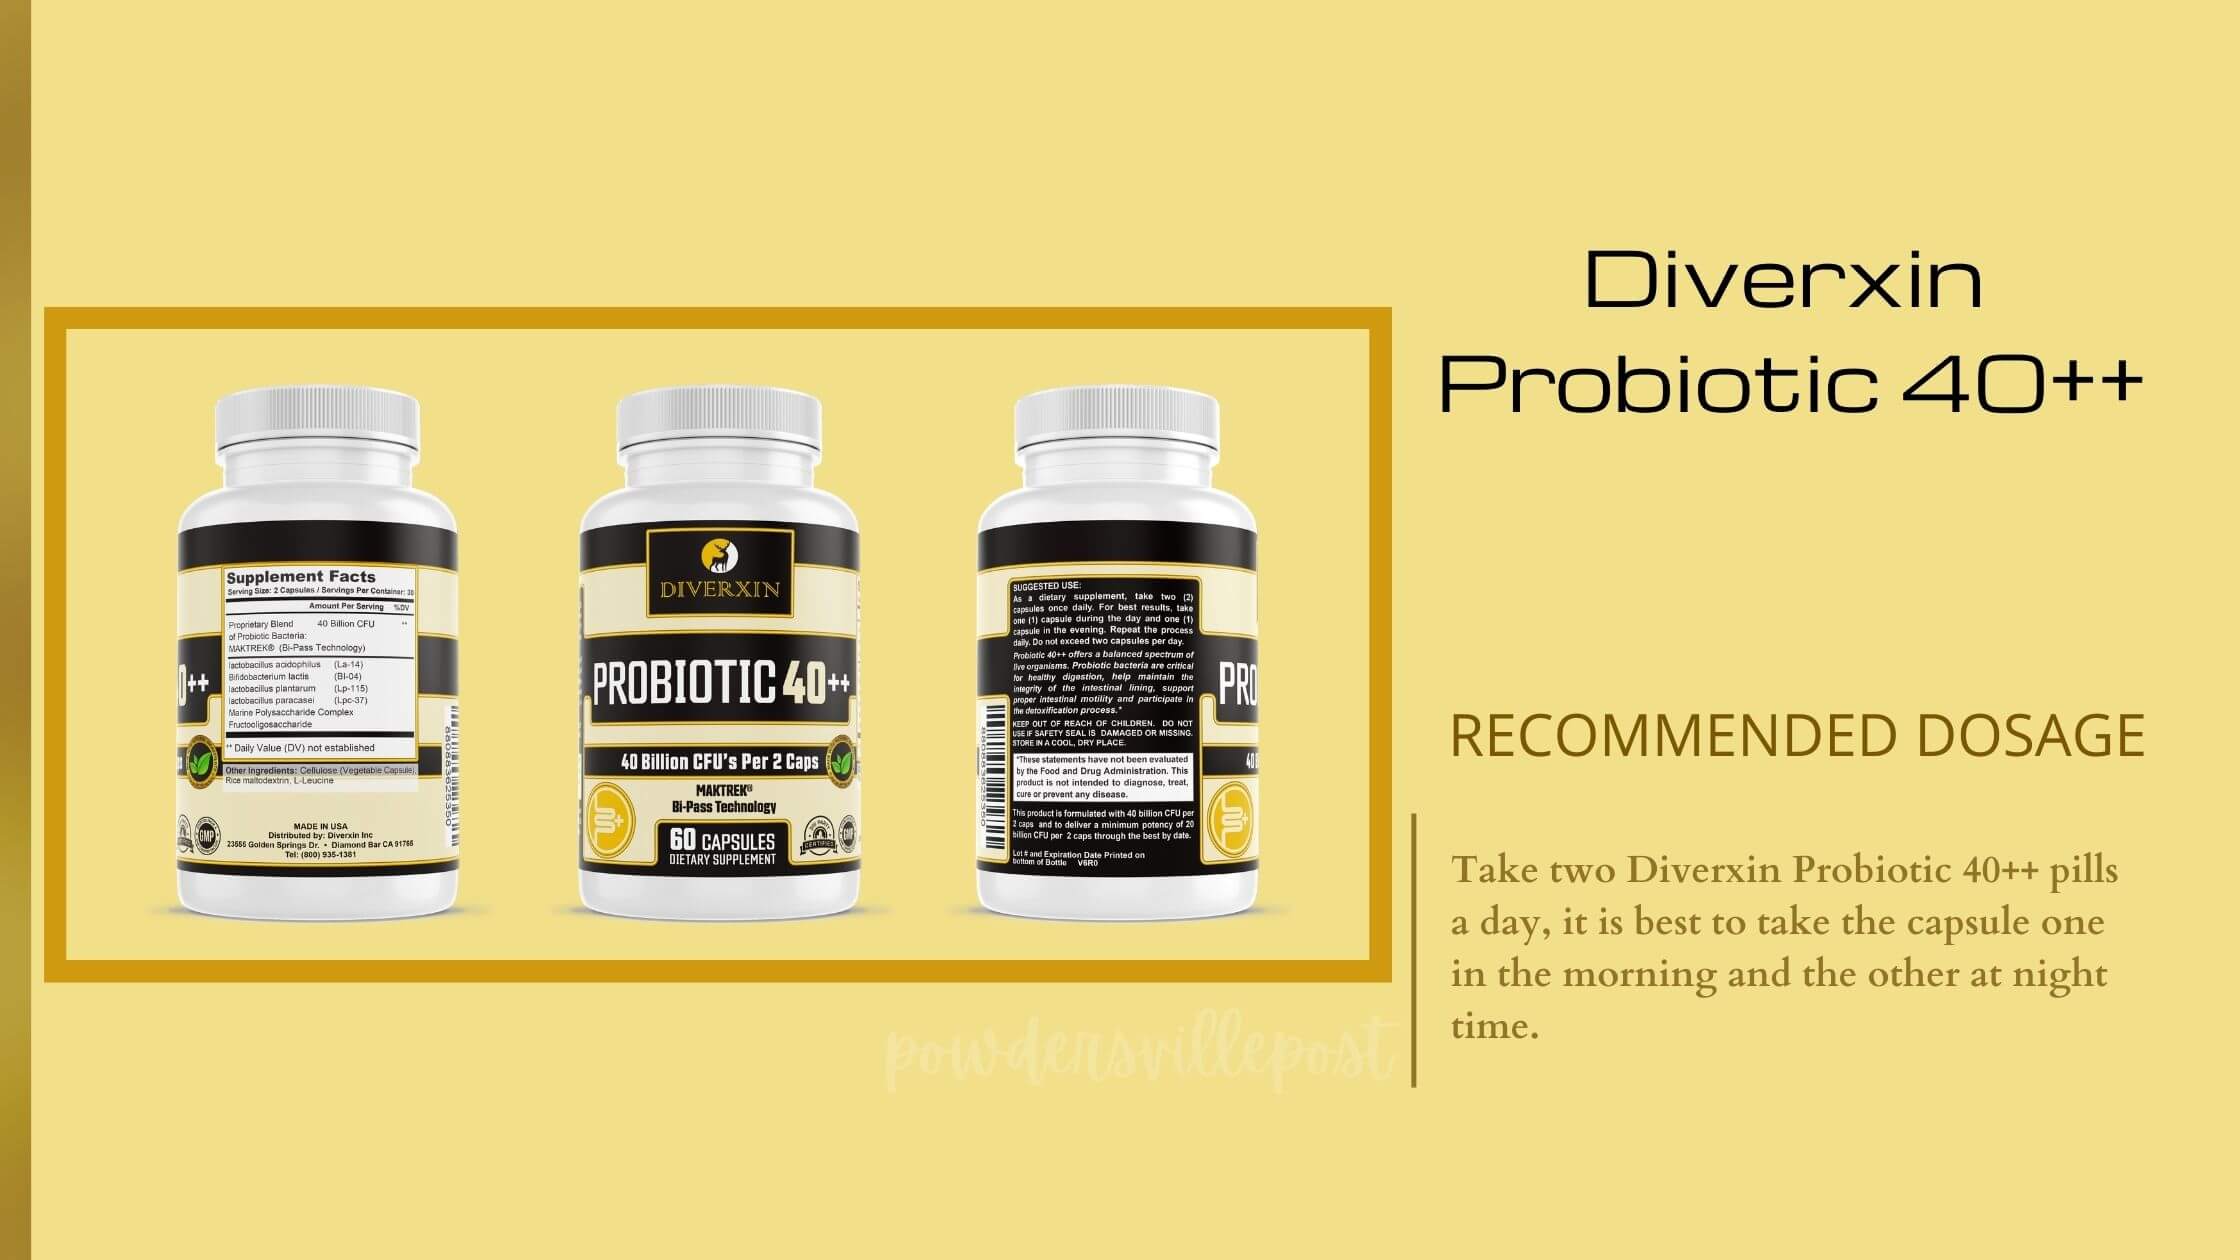 Diverxin Probiotic 40++ Detox Pill Dosage